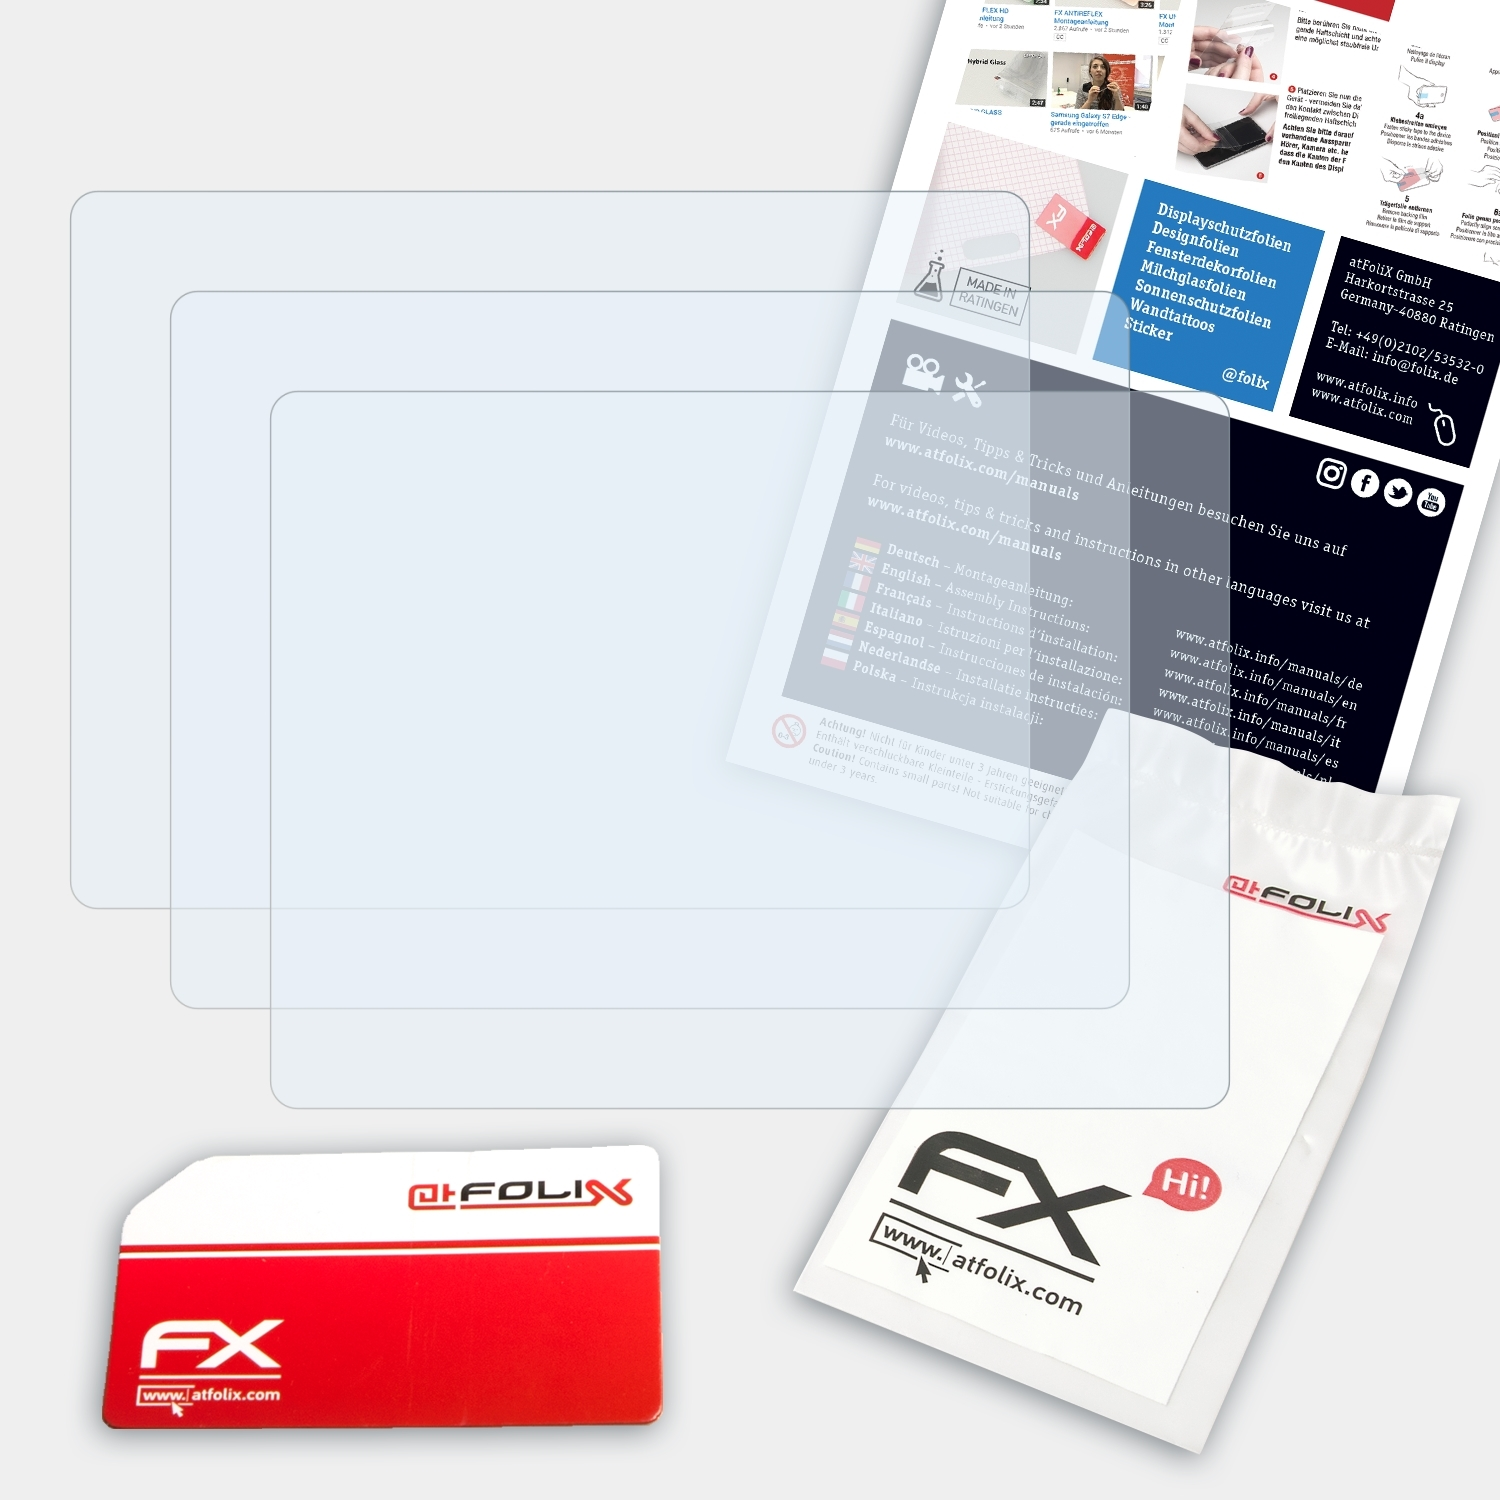 ATFOLIX 3x FX-Clear Displayschutz(für nüvi Garmin 550)